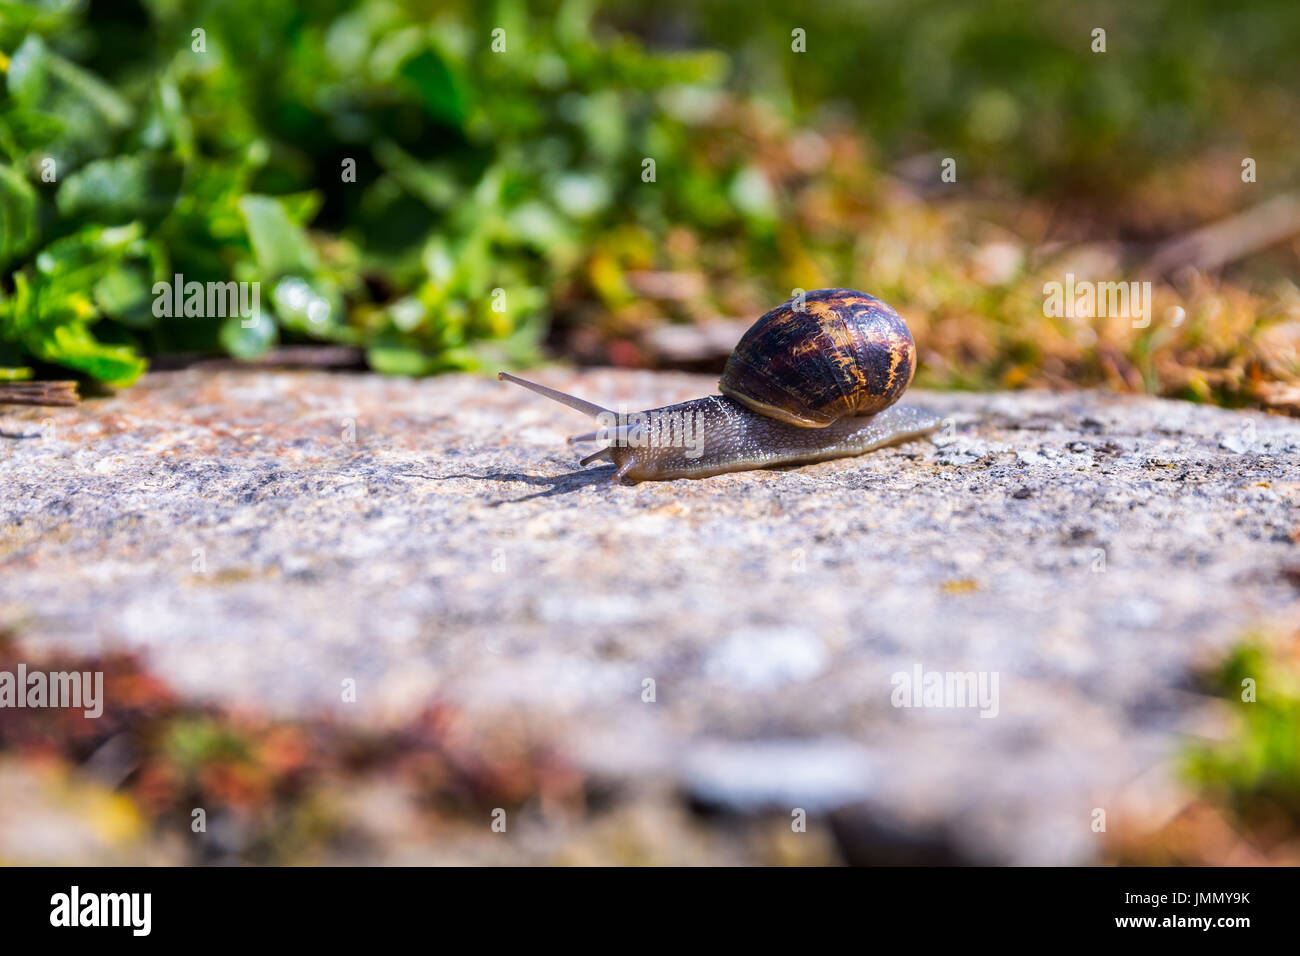 Snail strisciando su un hard rock texture in natura; marrone striato lumaca camminando sulle rocce in giornata piovosa, Brittany (Bretagne), Francia Foto Stock